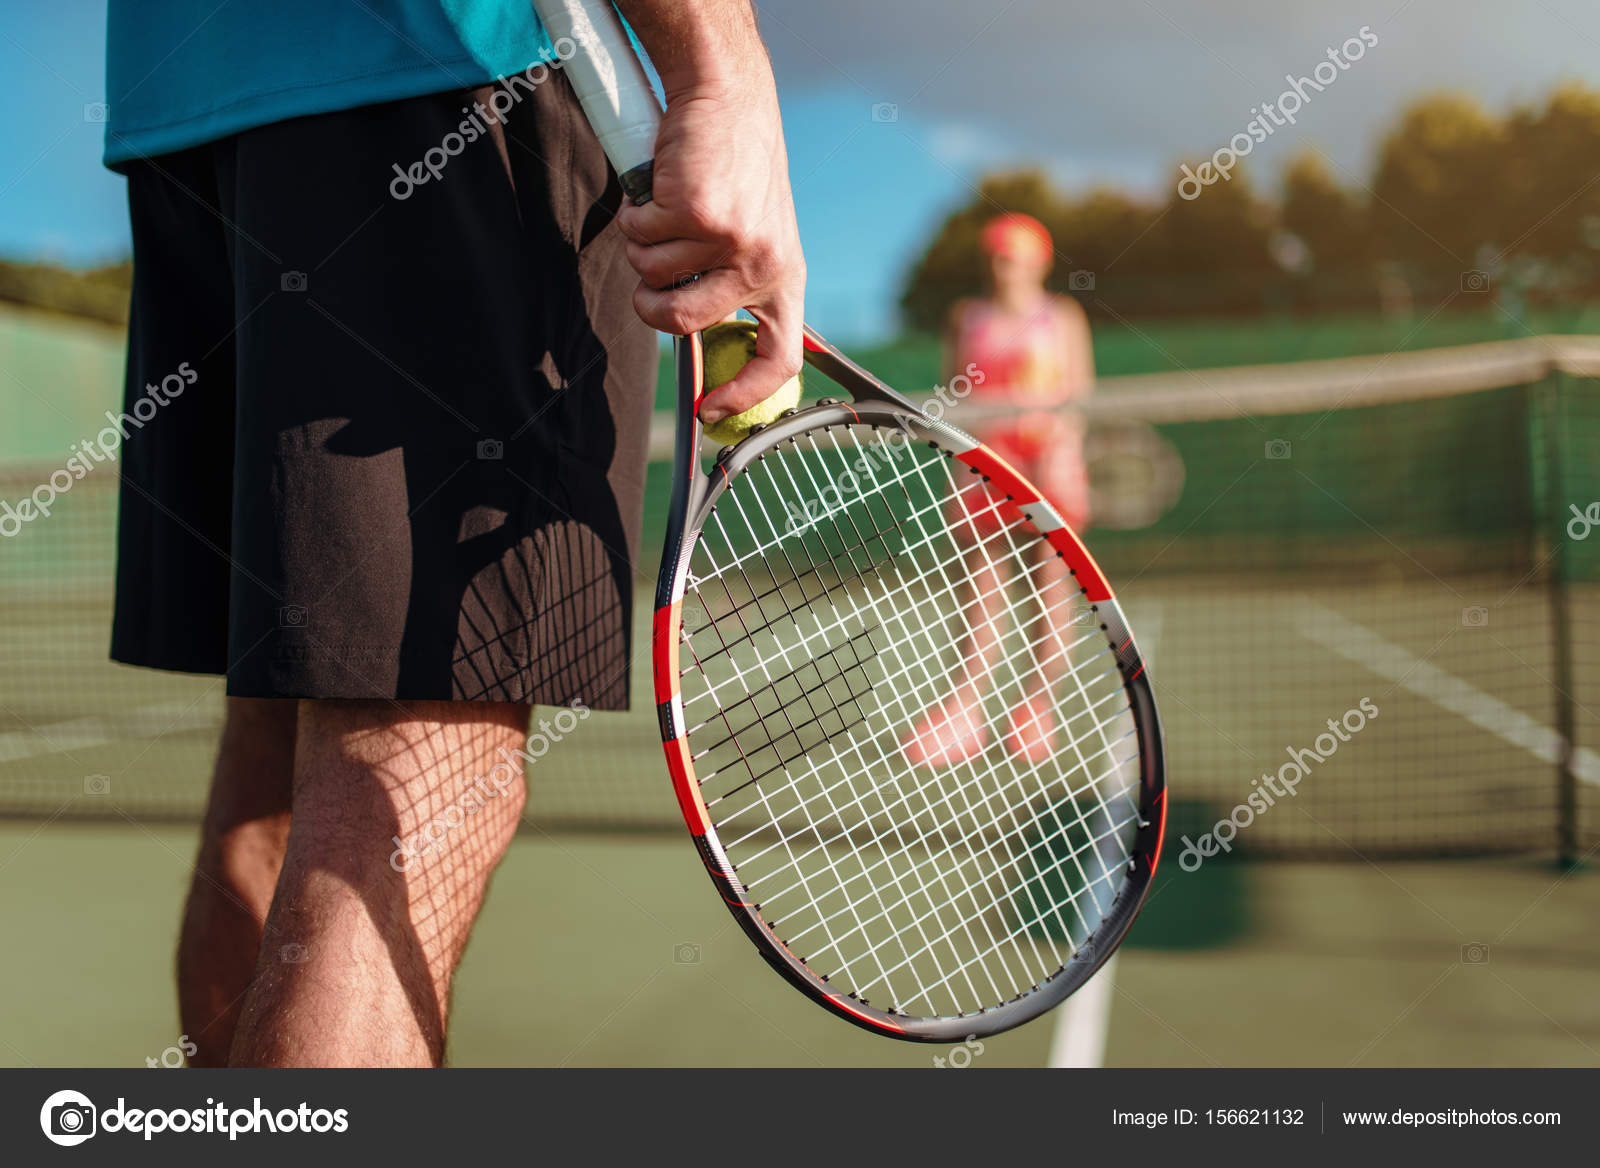 Fotos de Jogo de tênis, Imagens de Jogo de tênis sem royalties